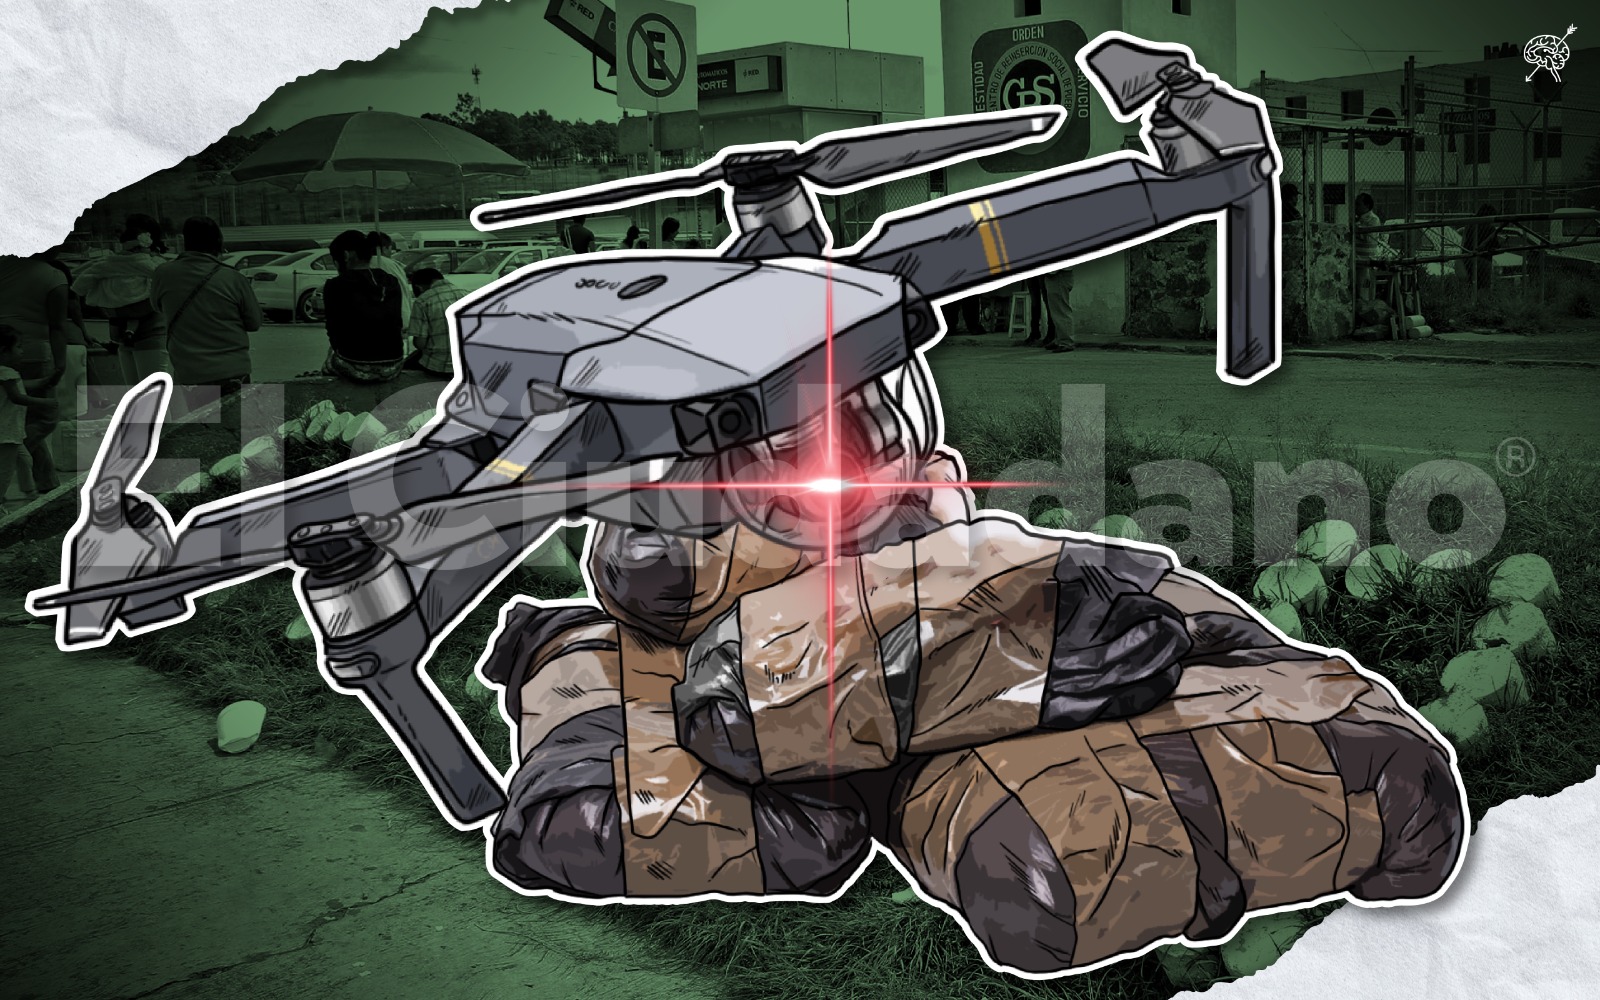 Con dron, intentan introducir drogas a penal poblano de San Miguel